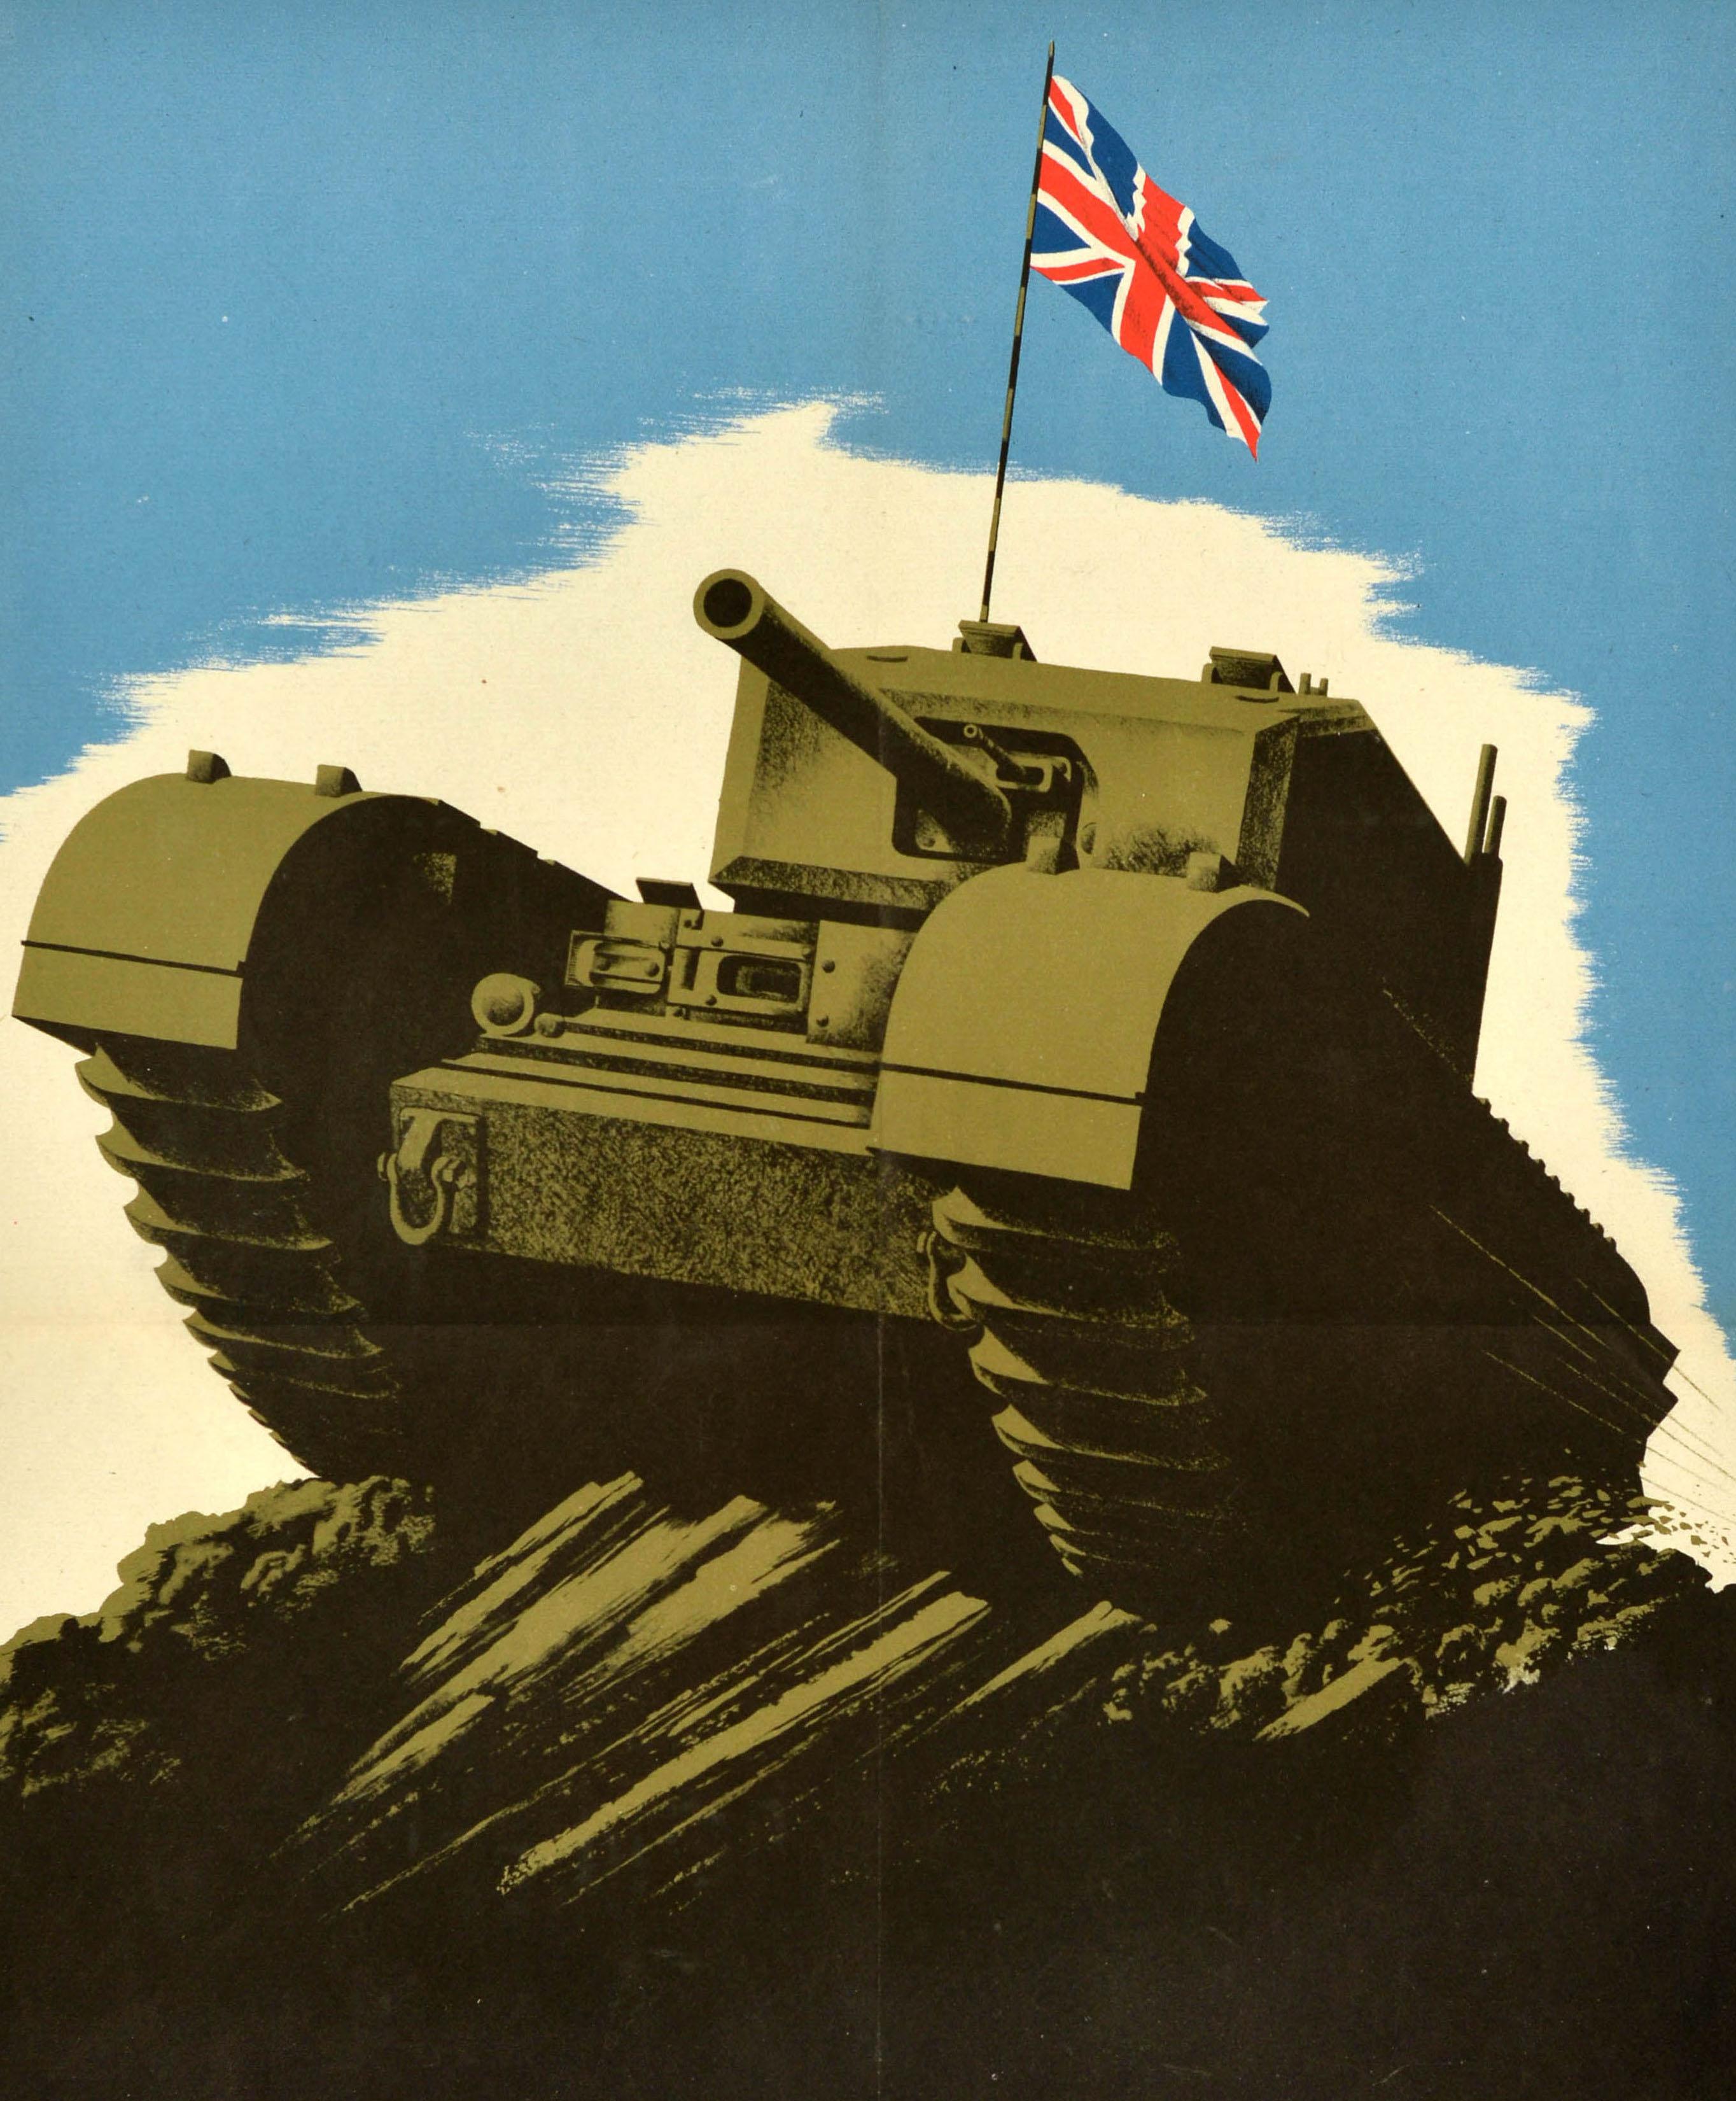 Affiche originale de la Seconde Guerre mondiale, illustrée d'un char militaire roulant à vive allure sur une colline, avec le drapeau Union Jack du Royaume-Uni flottant sur le ciel bleu, la citation de Winston Churchill en texte gras sur la bordure